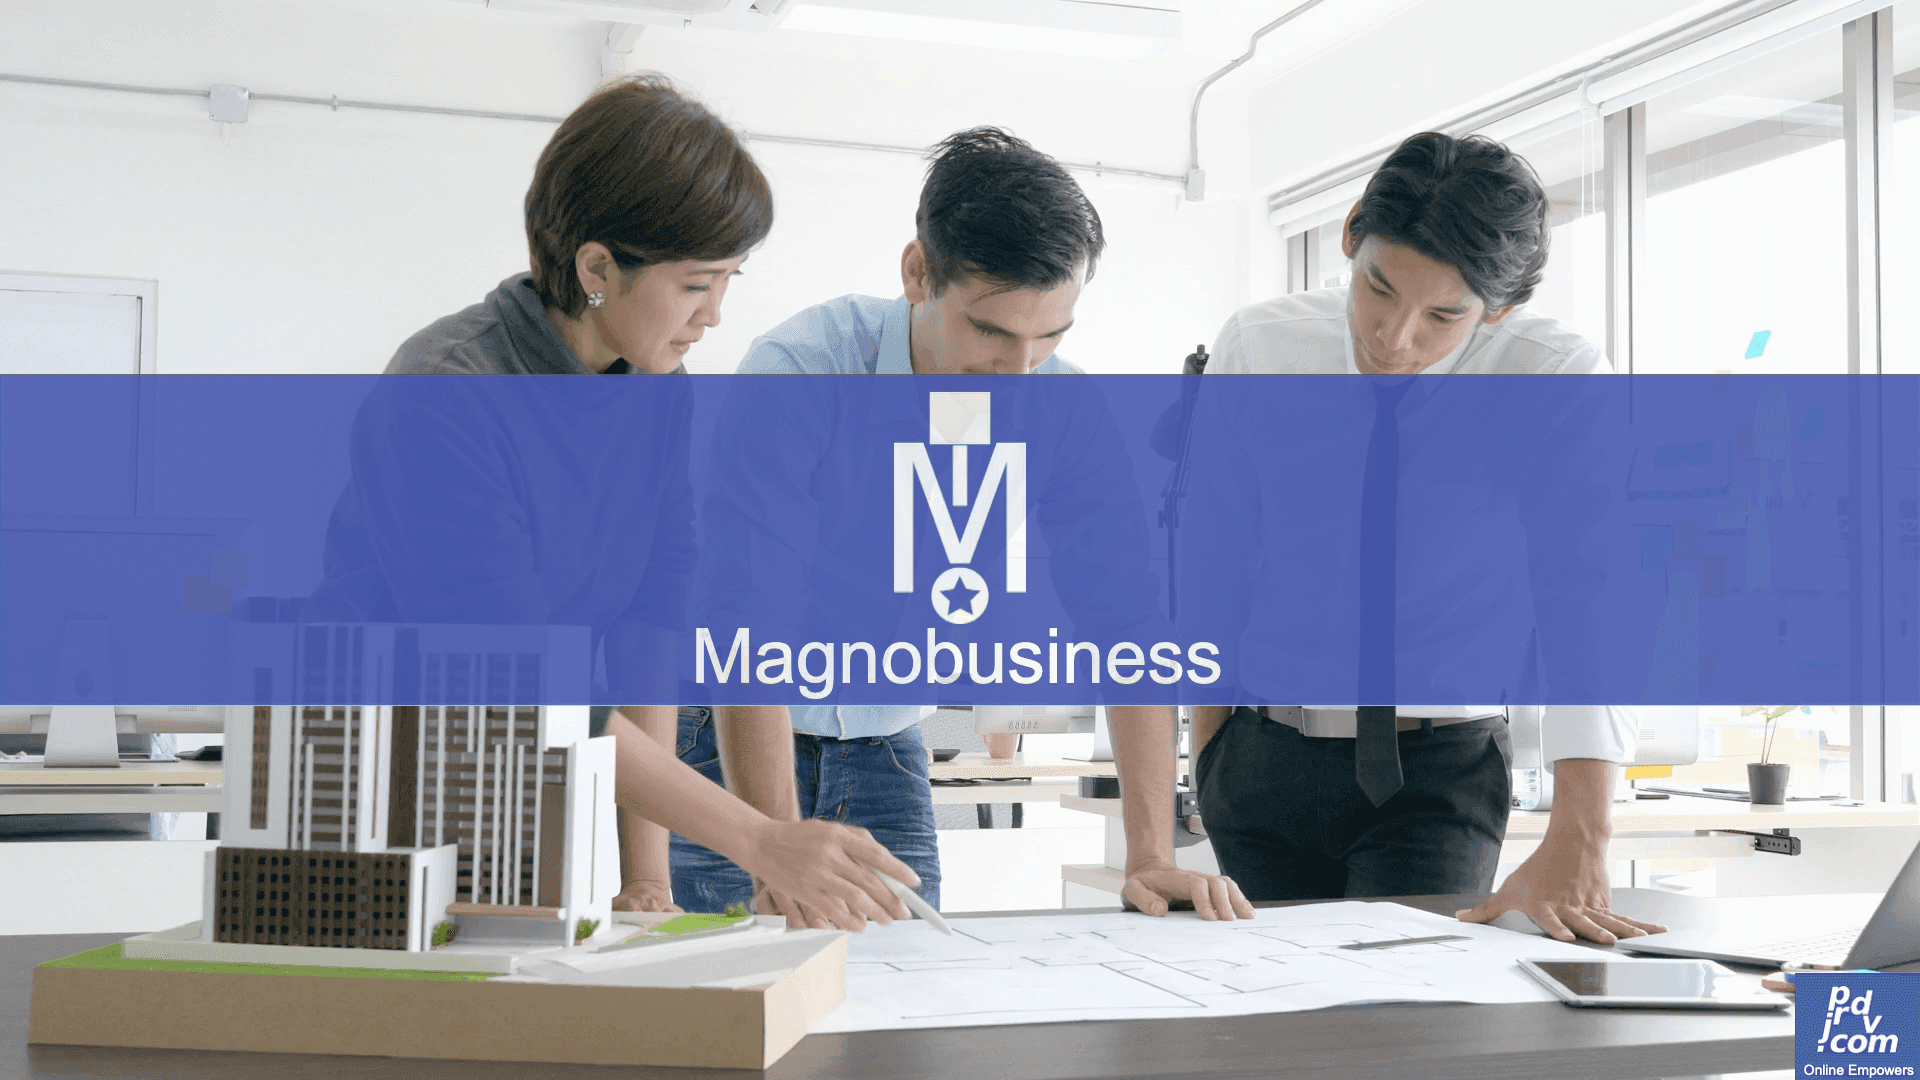 Magnobusiness